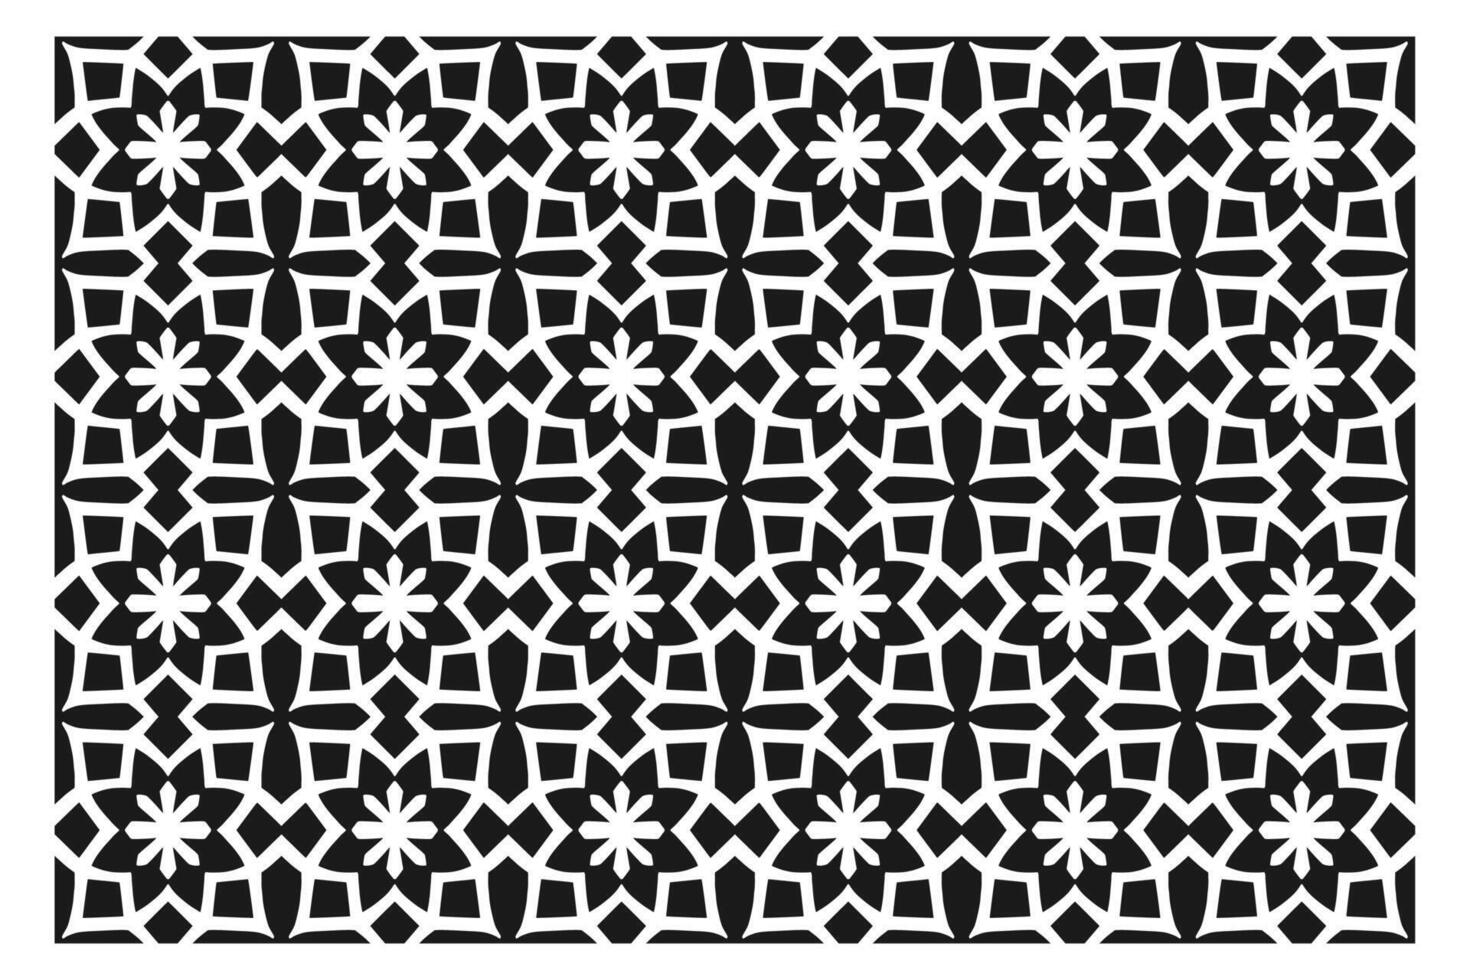 Islamitisch meetkundig patroon. abstract mandala. etnisch decoratief element vector